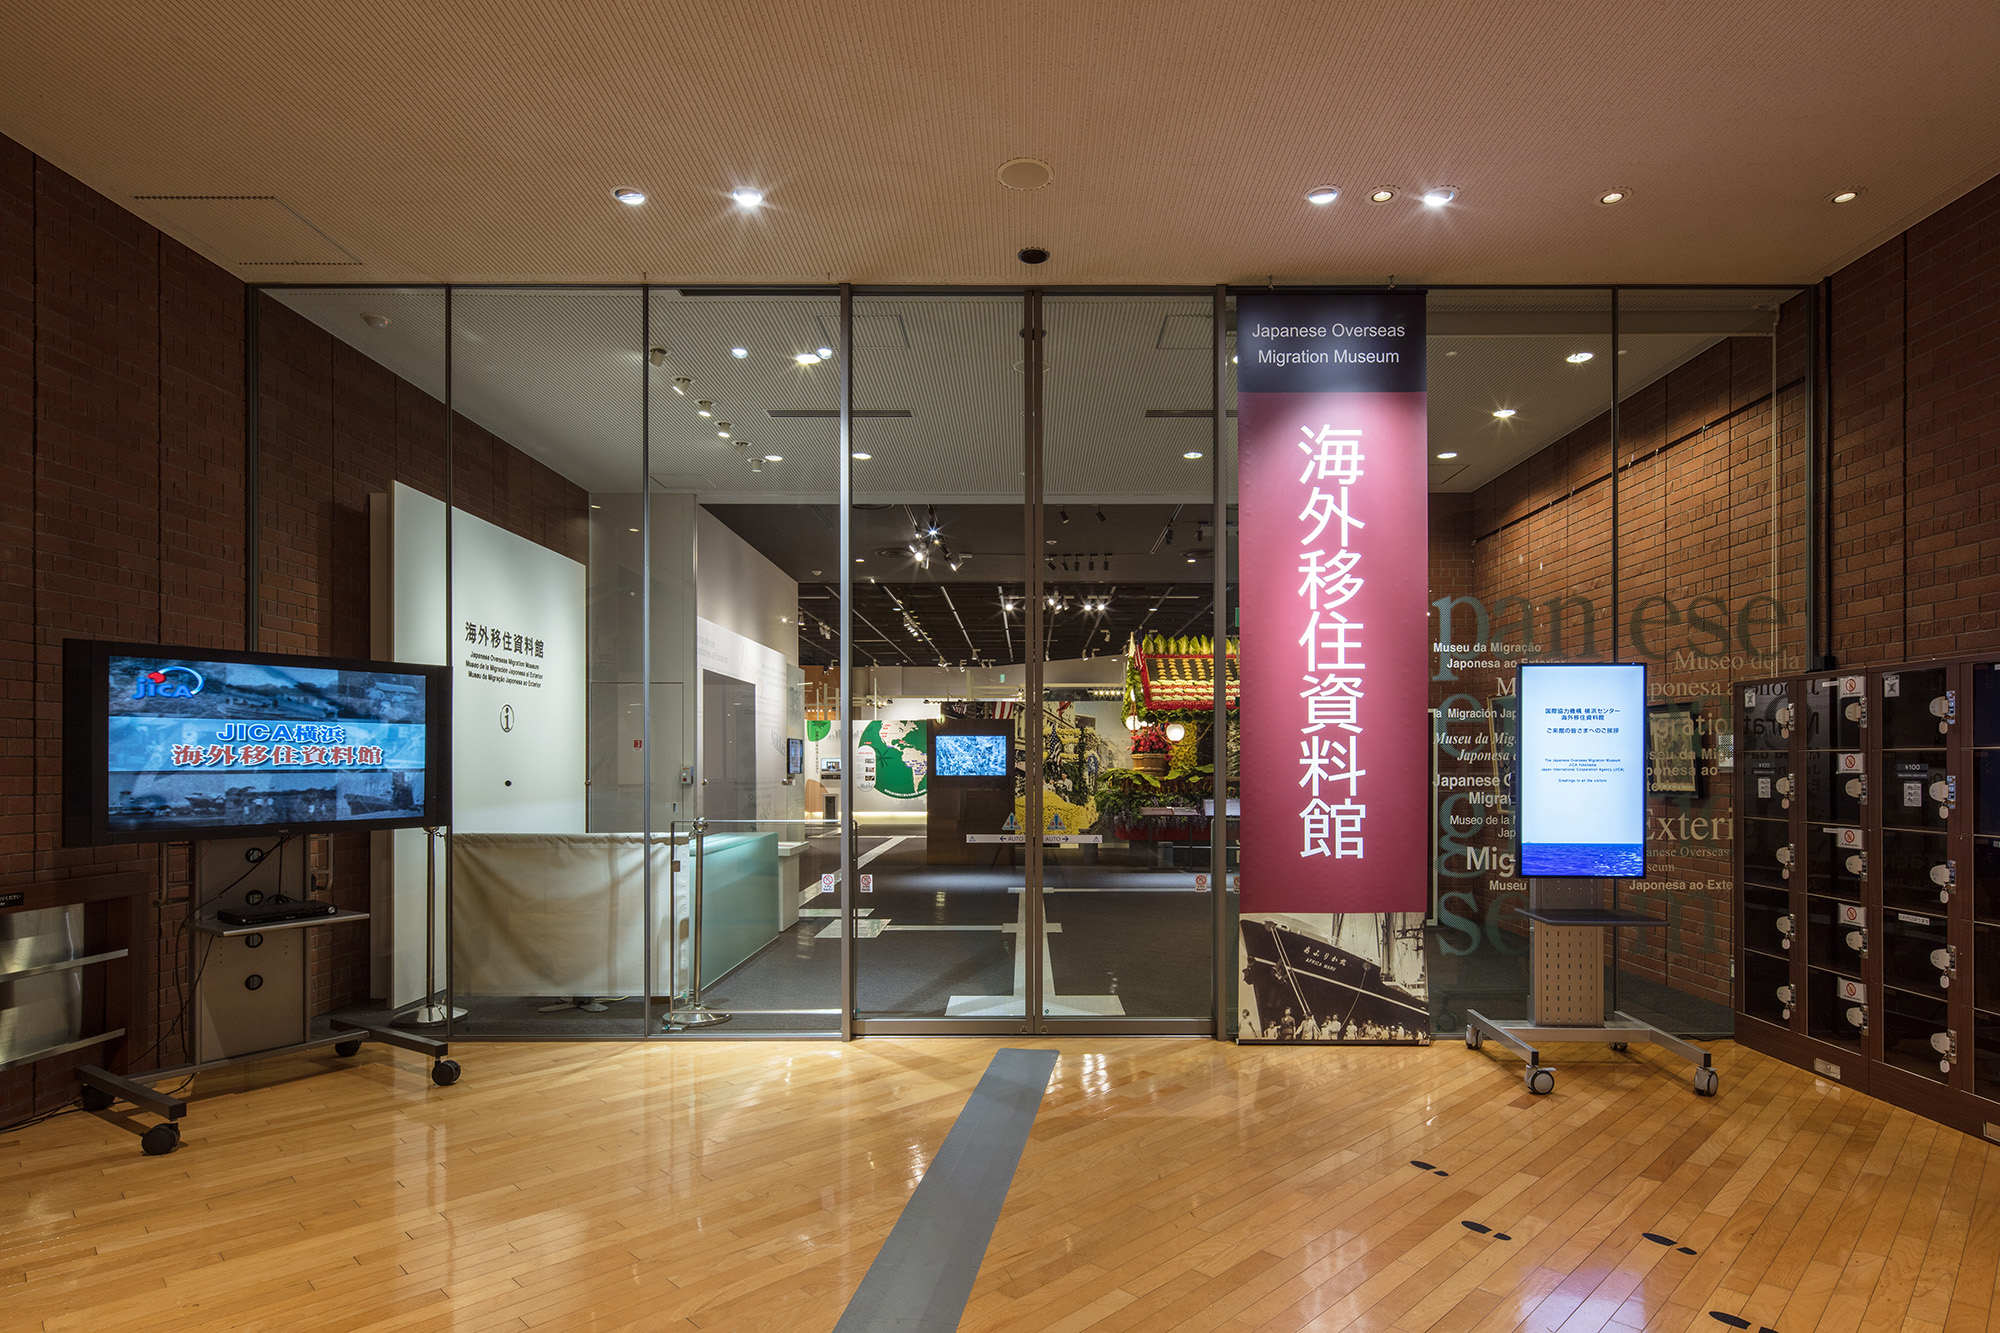 Musée japonais de la migration outre-mer